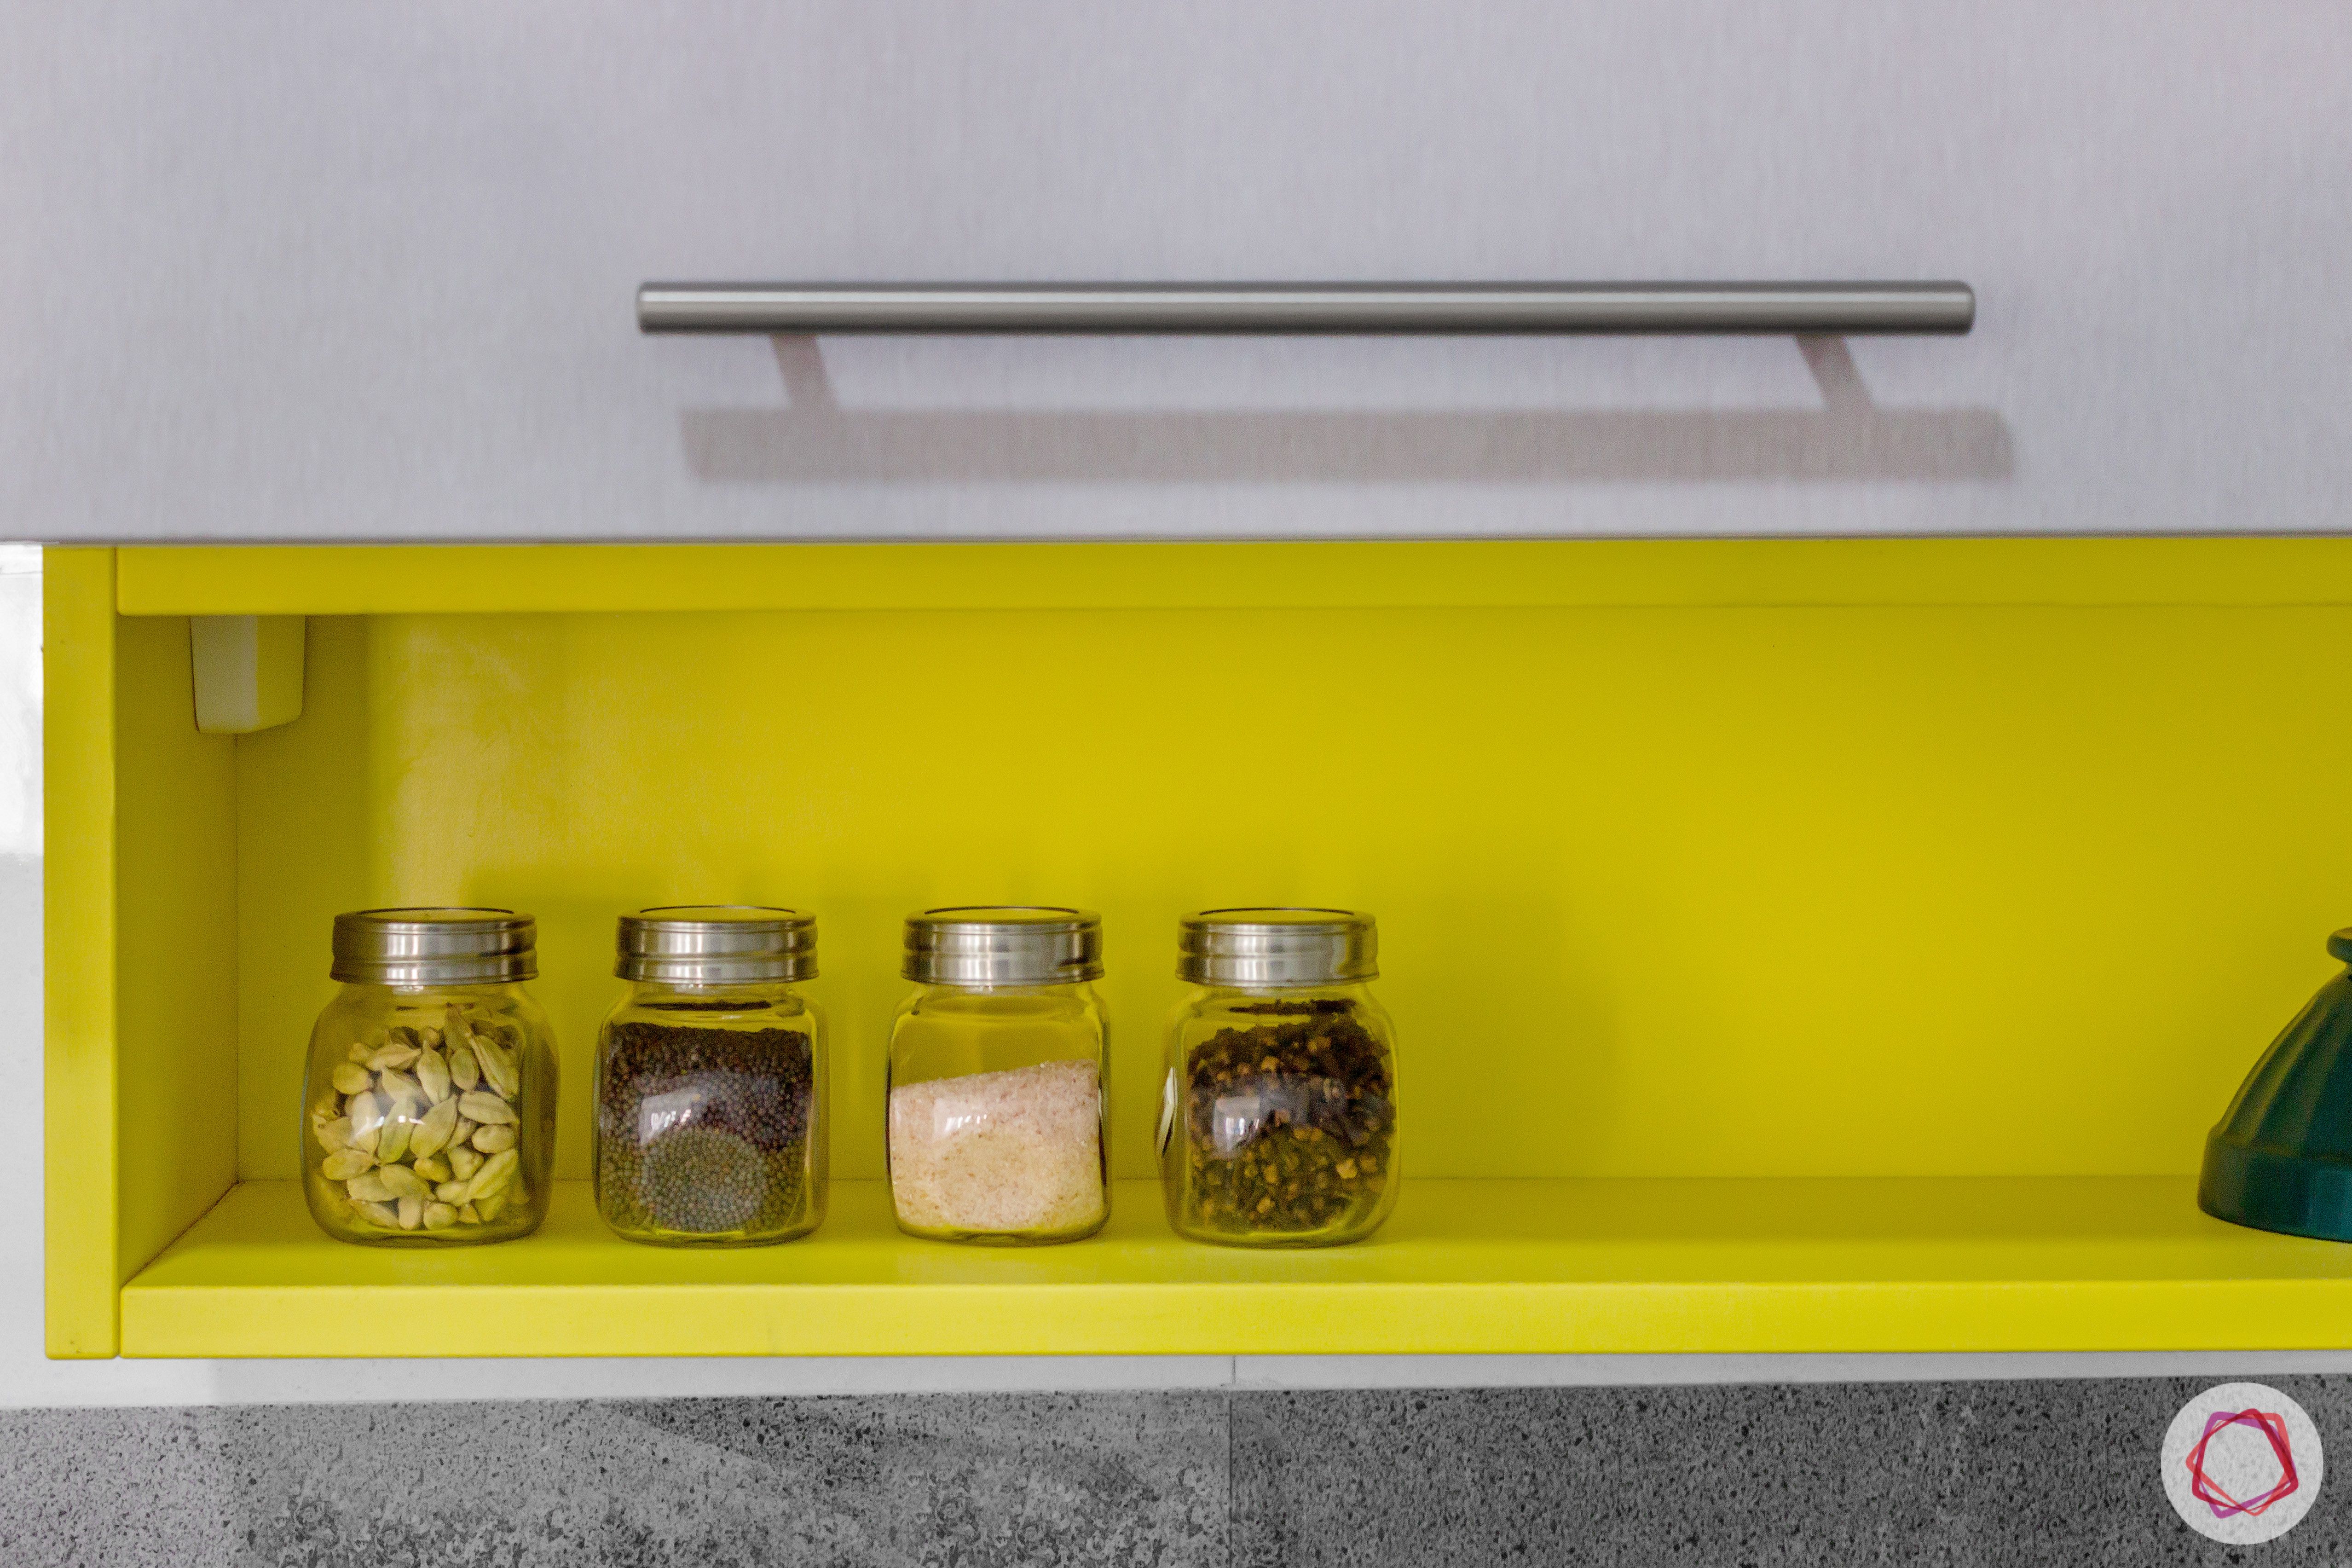 brigade northridge-budget kitchen design-spice rack designs-yellow spice rack